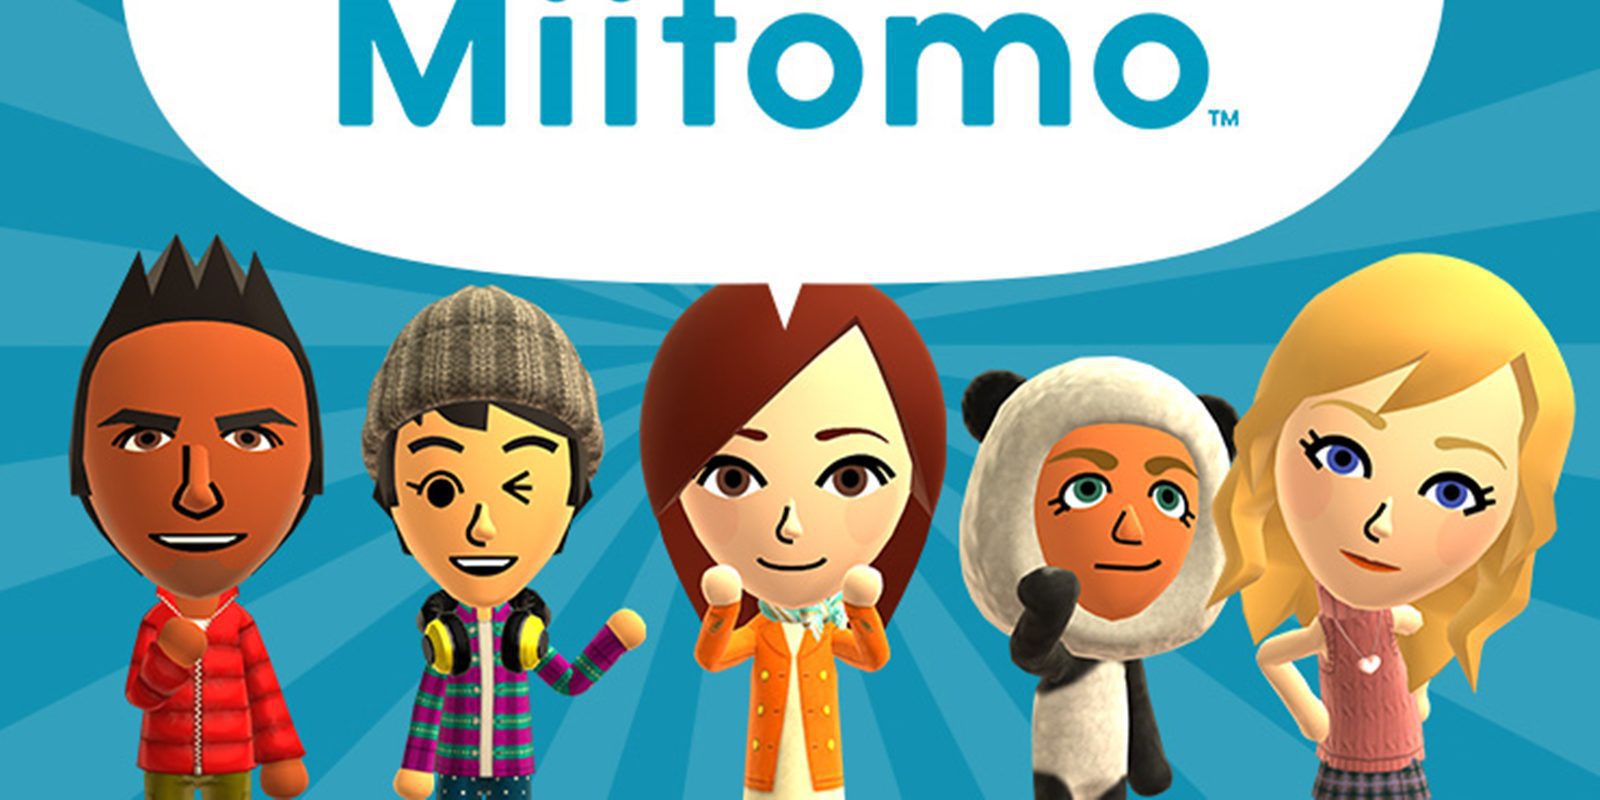 'Miitomo' - My Nintendo' ofrece nuevas recompensas para el juego